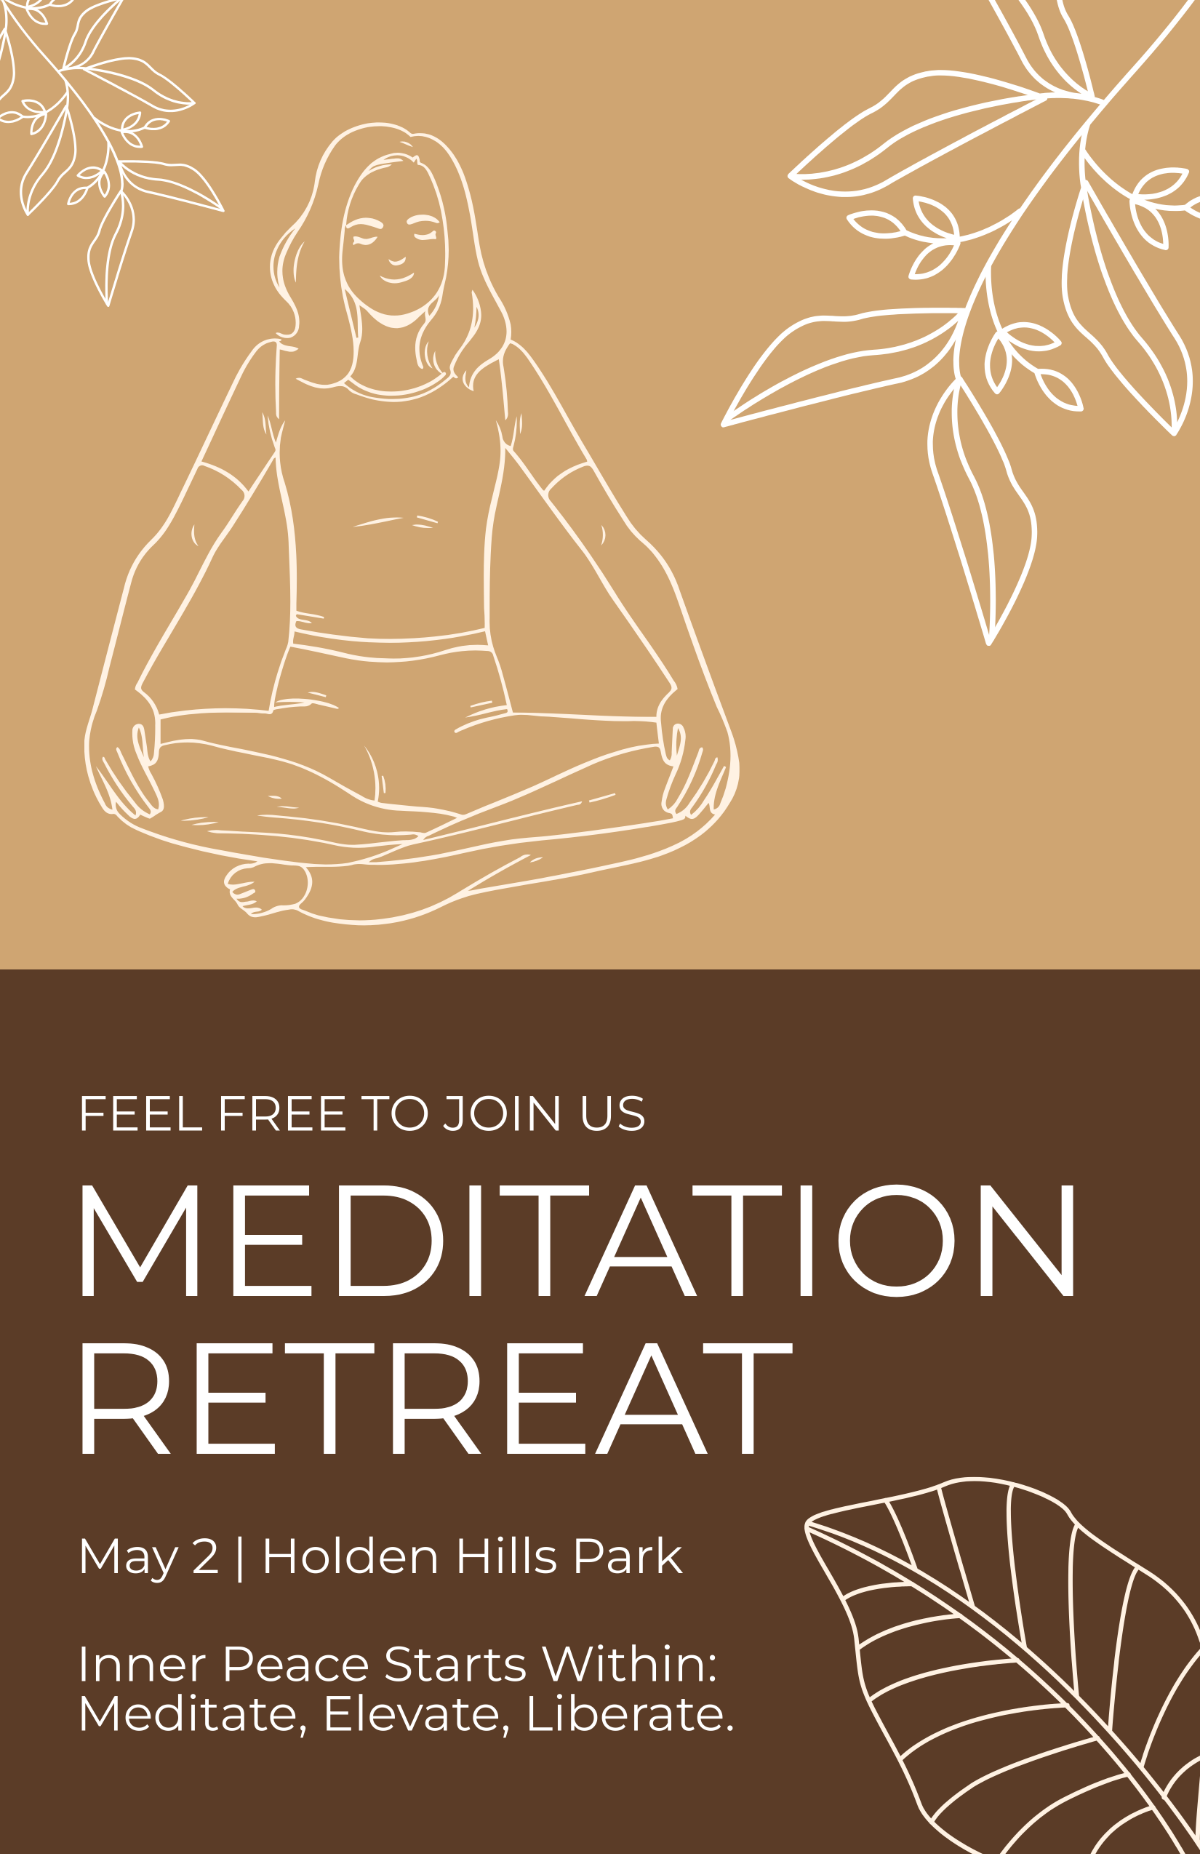 Meditation Poster